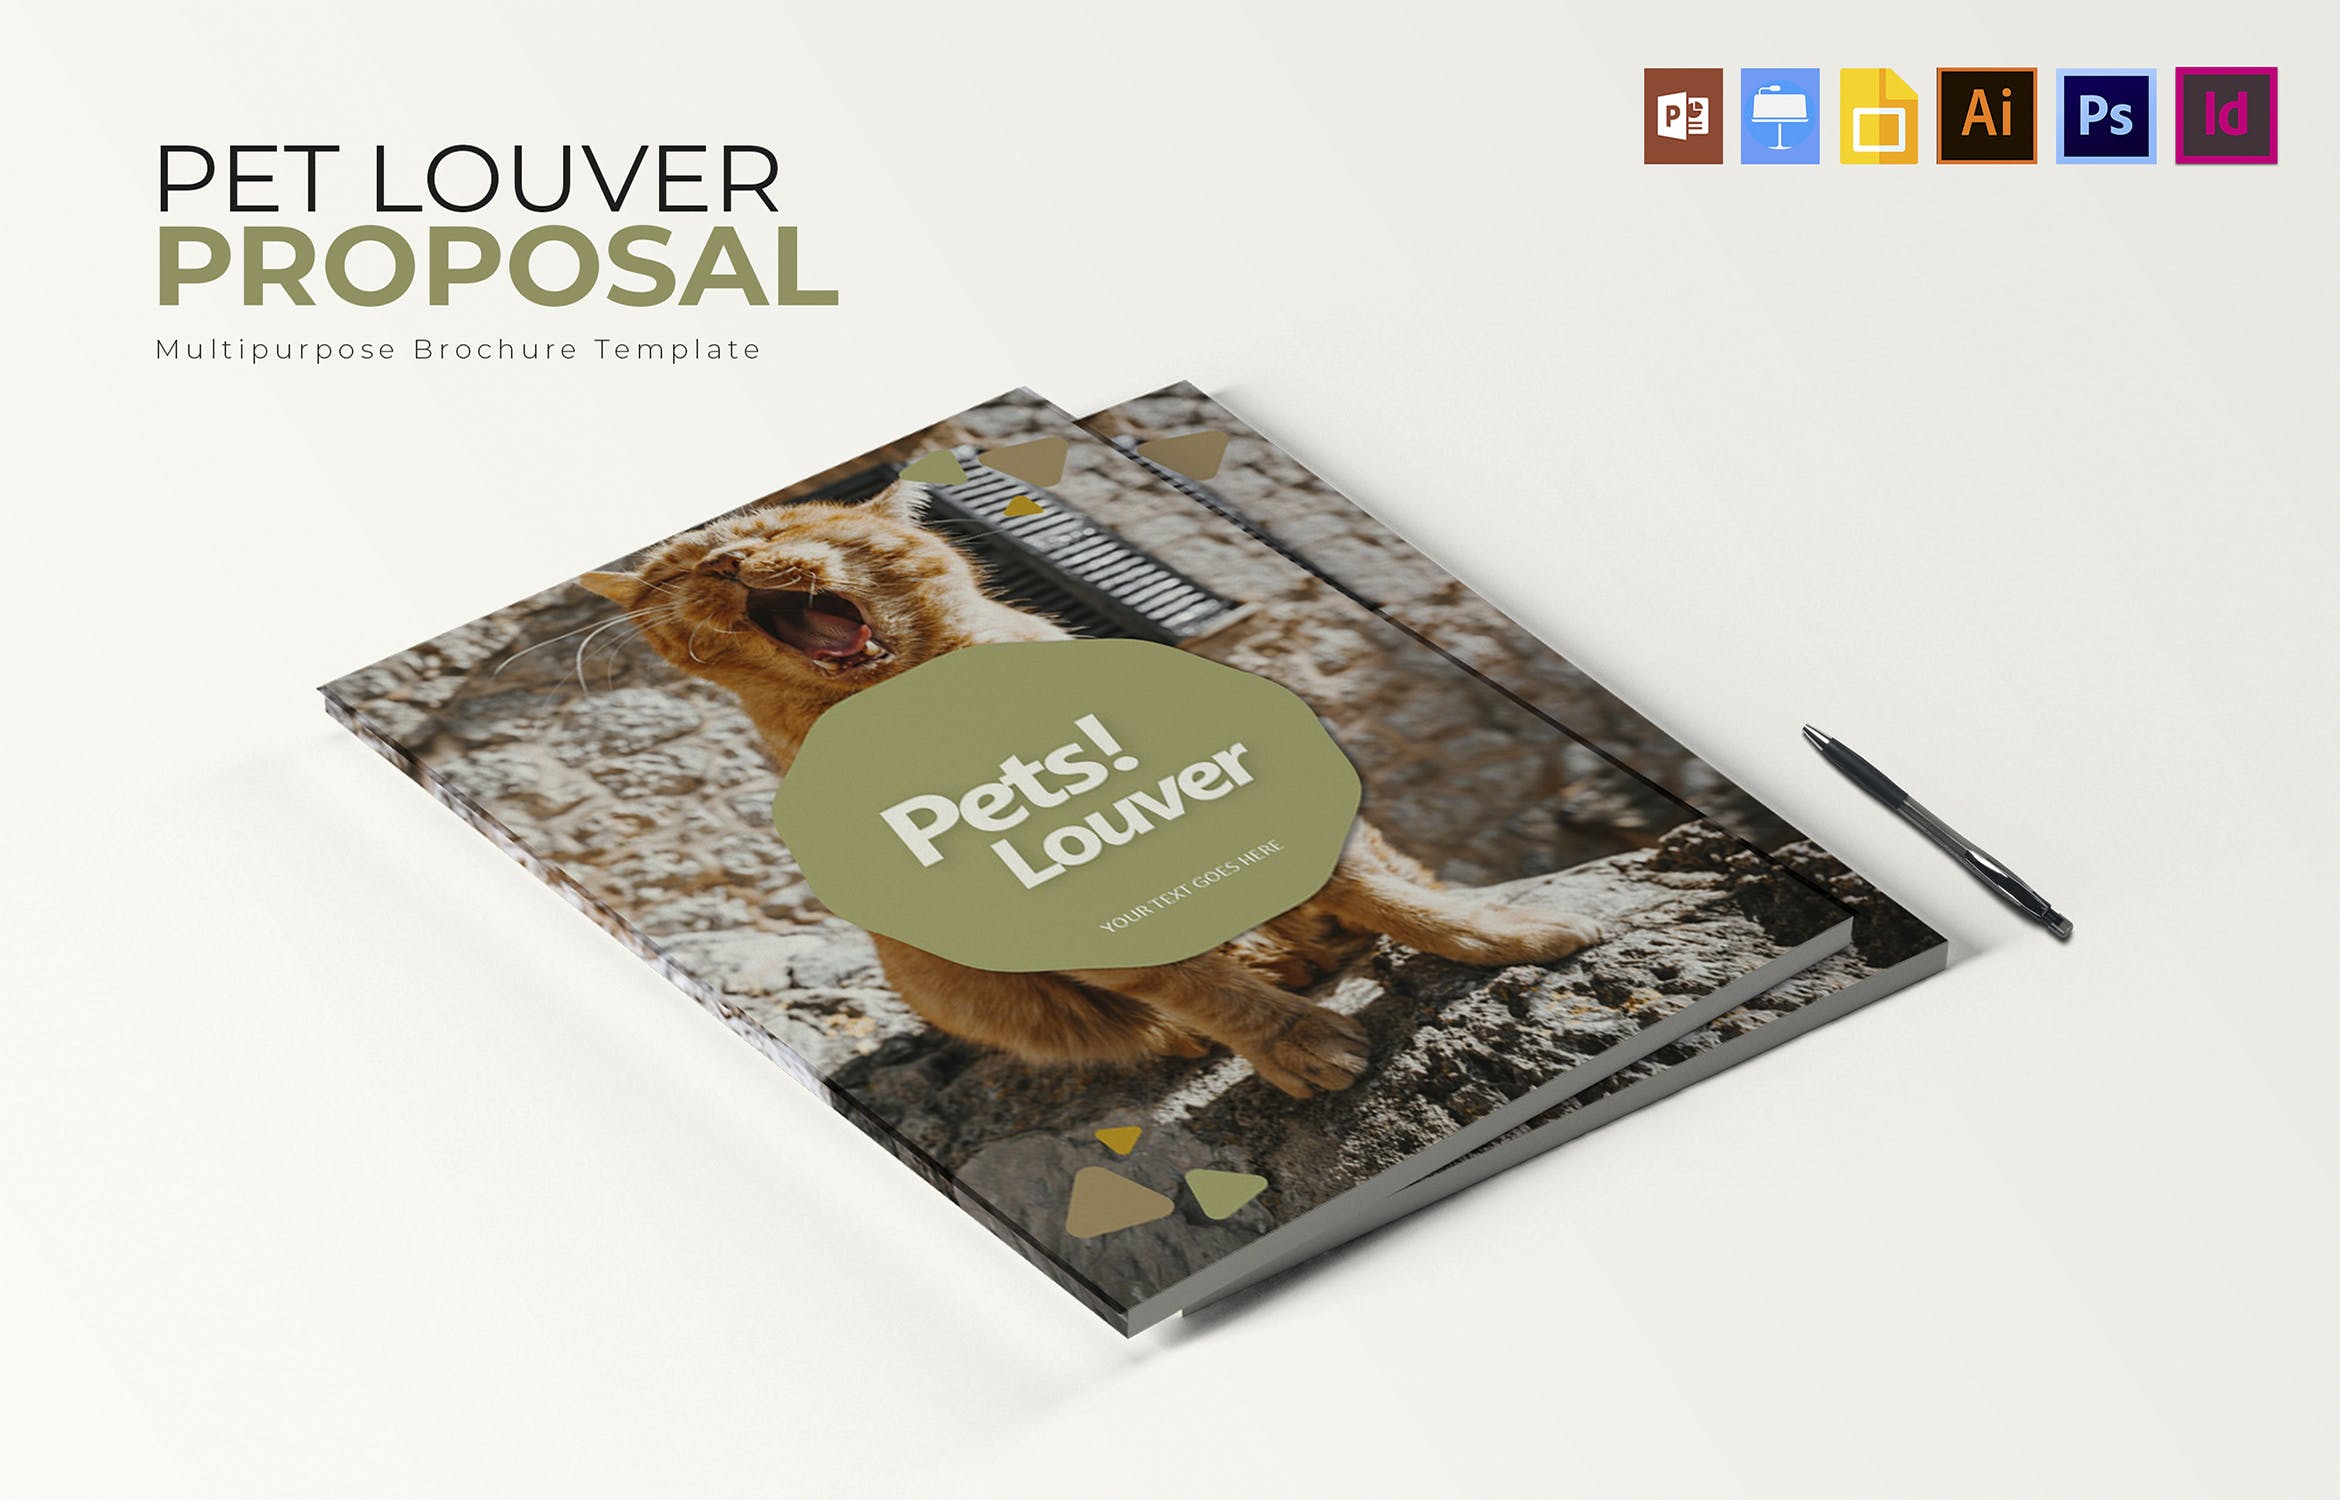 宠物主题宣传画册设计模板 Pets Louver | Brochure Template插图(3)